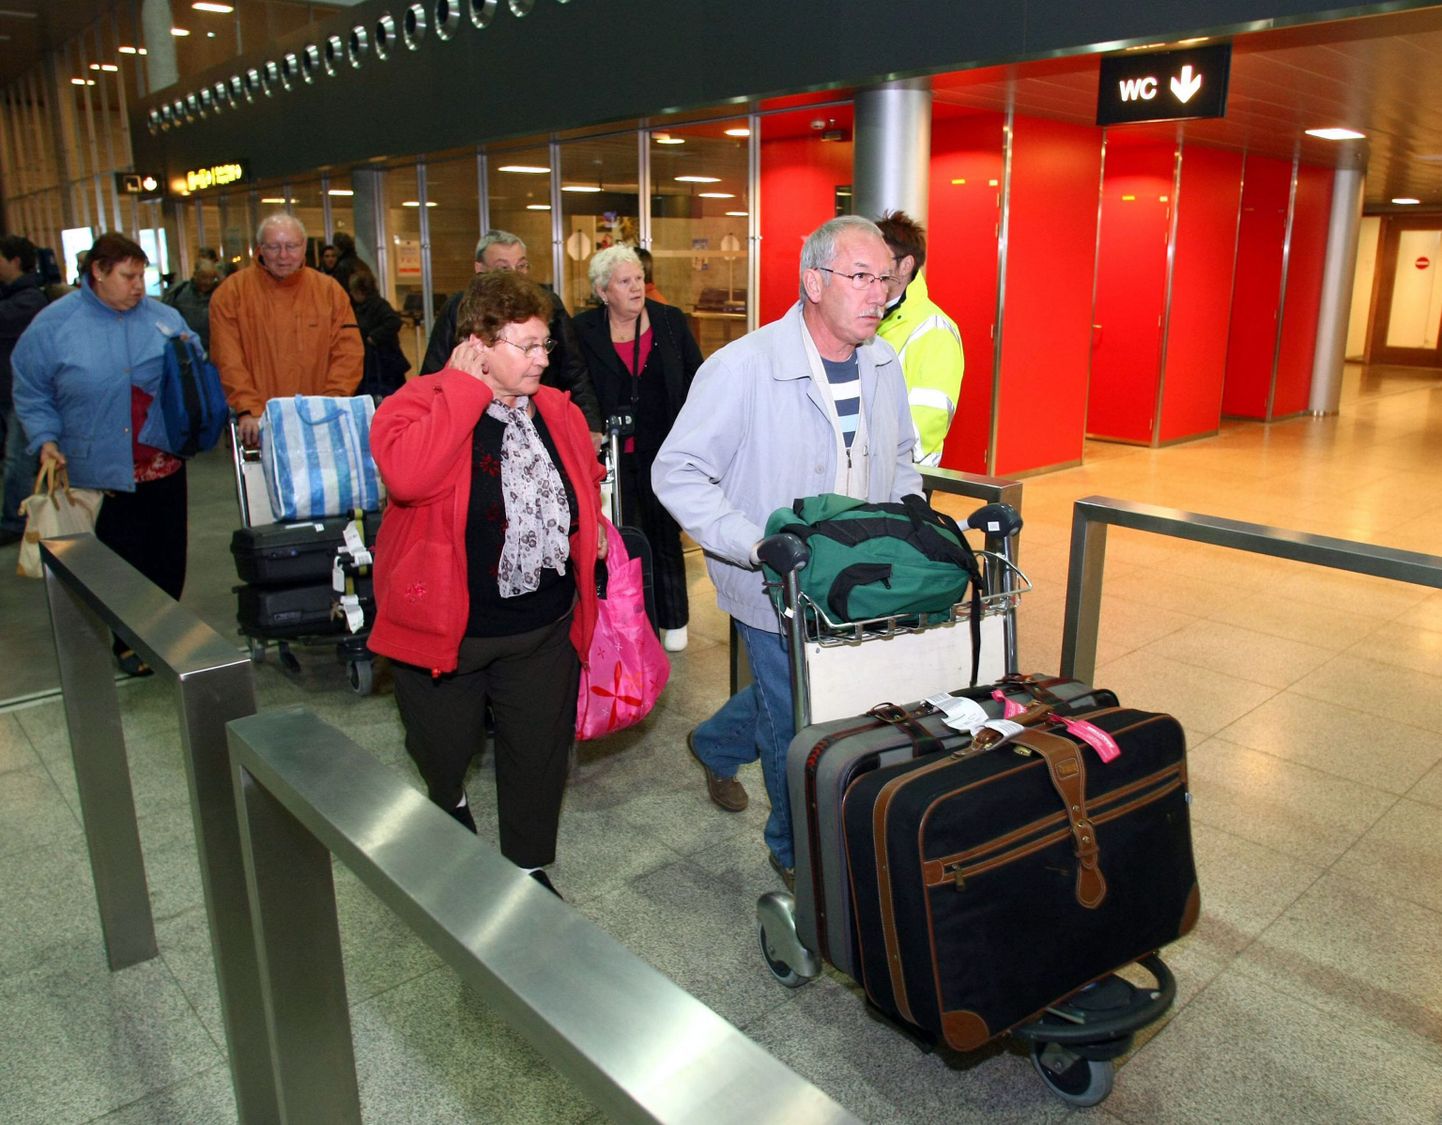 Arhiivipilt, millel mornid Belgia ja Prantsuse turistid, keda samuti 2008. aasta sügisel Antalya kuurordis mõnda aega pantvangis hoiti, sest nende reisikorraldaja läks pankrotti.